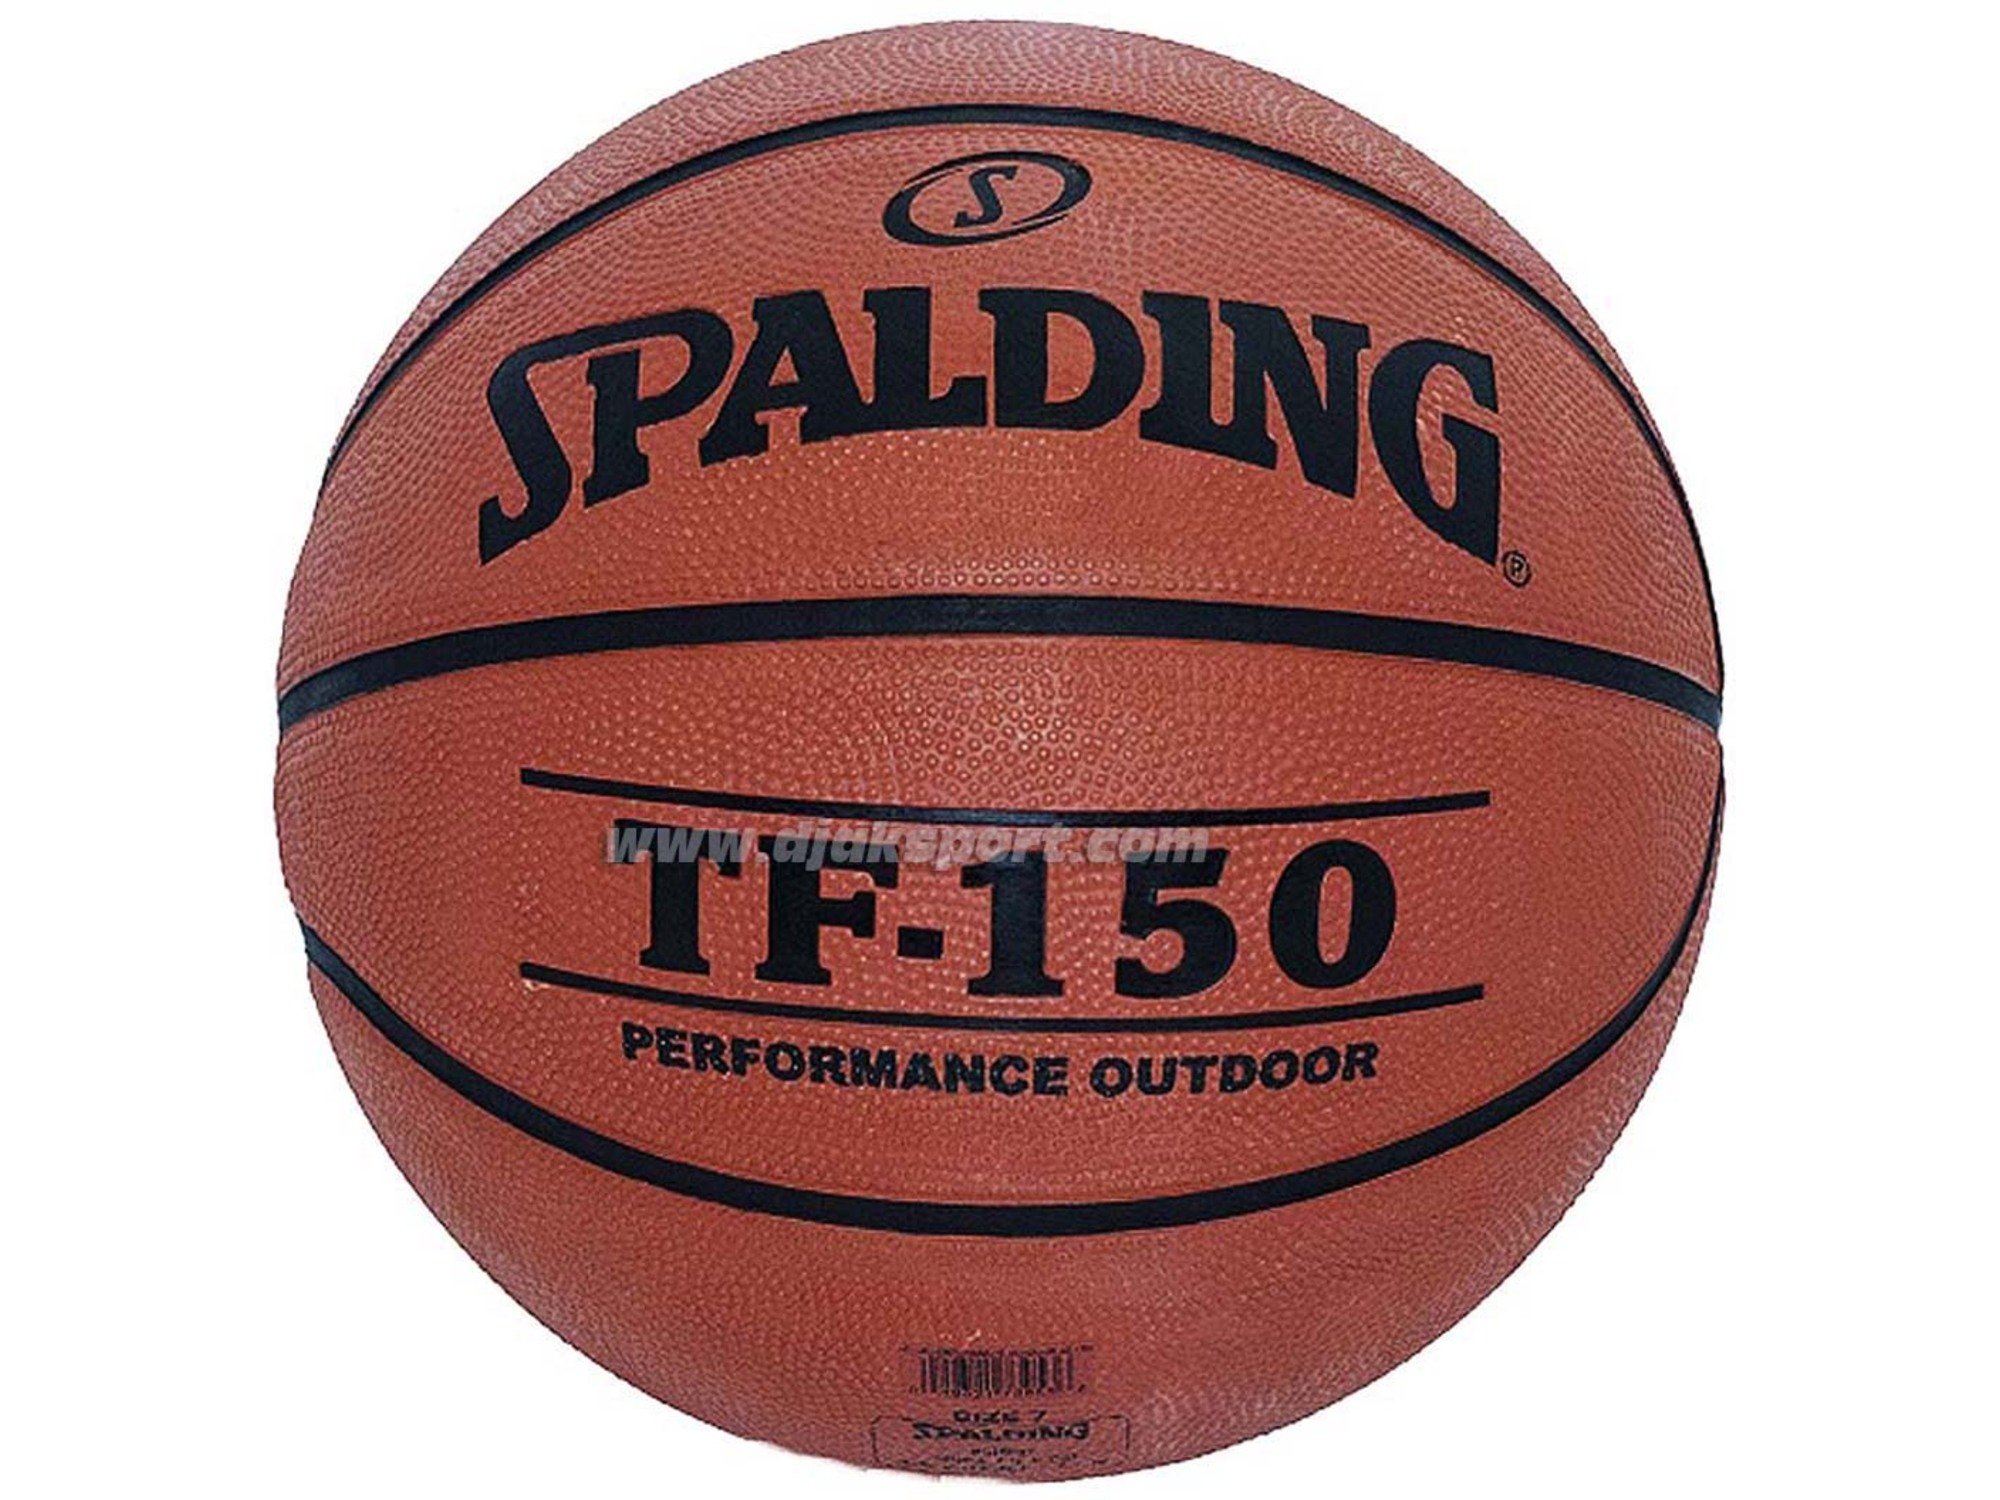 Spalding Tf 150 Size 7 73-953Z